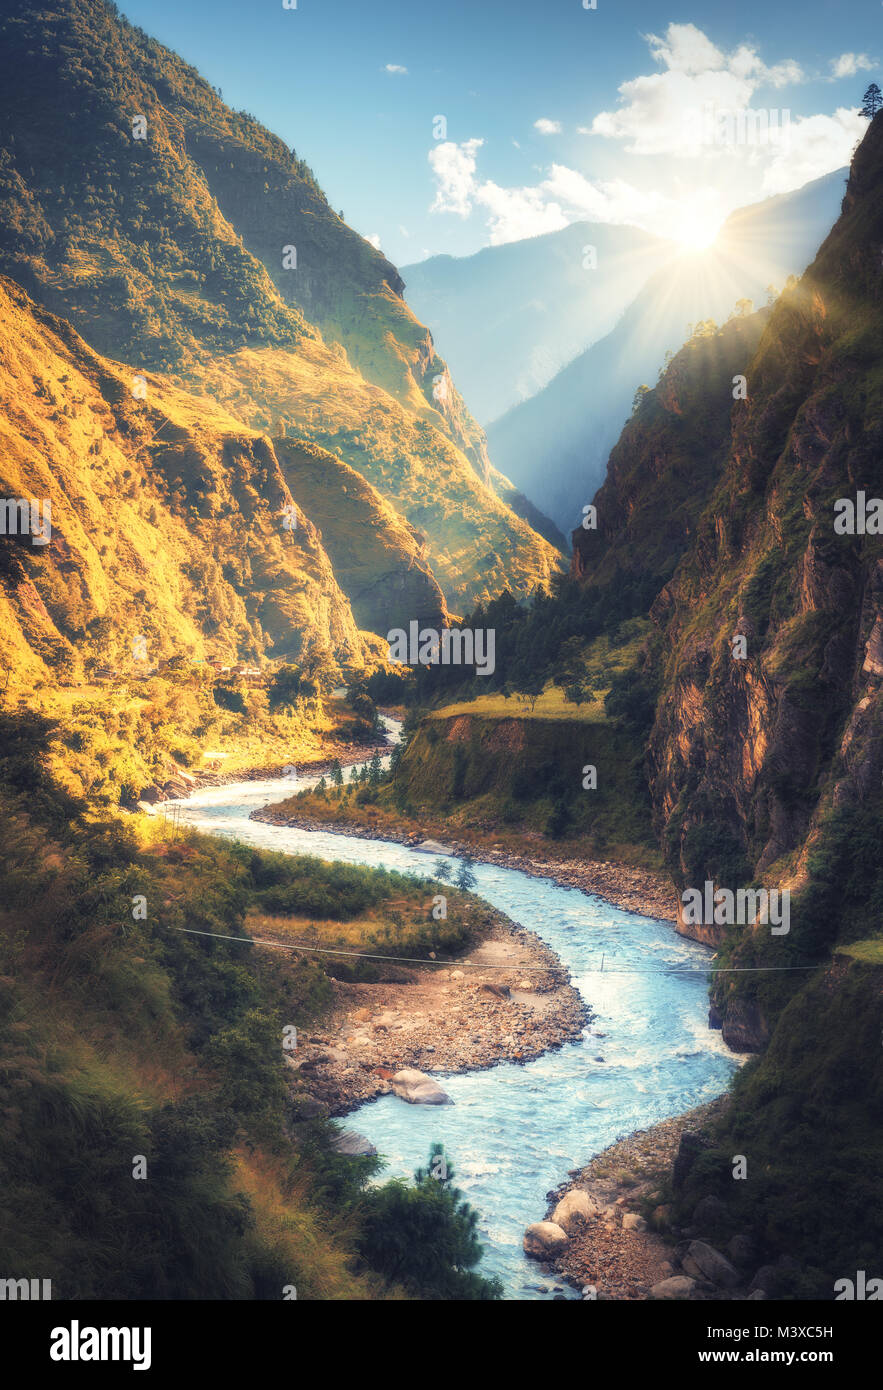 Coloridos paisajes con altas montañas del Himalaya, hermoso río curvada, verde bosque, el cielo azul con nubes y amarillo sol al atardecer en otoño Foto de stock